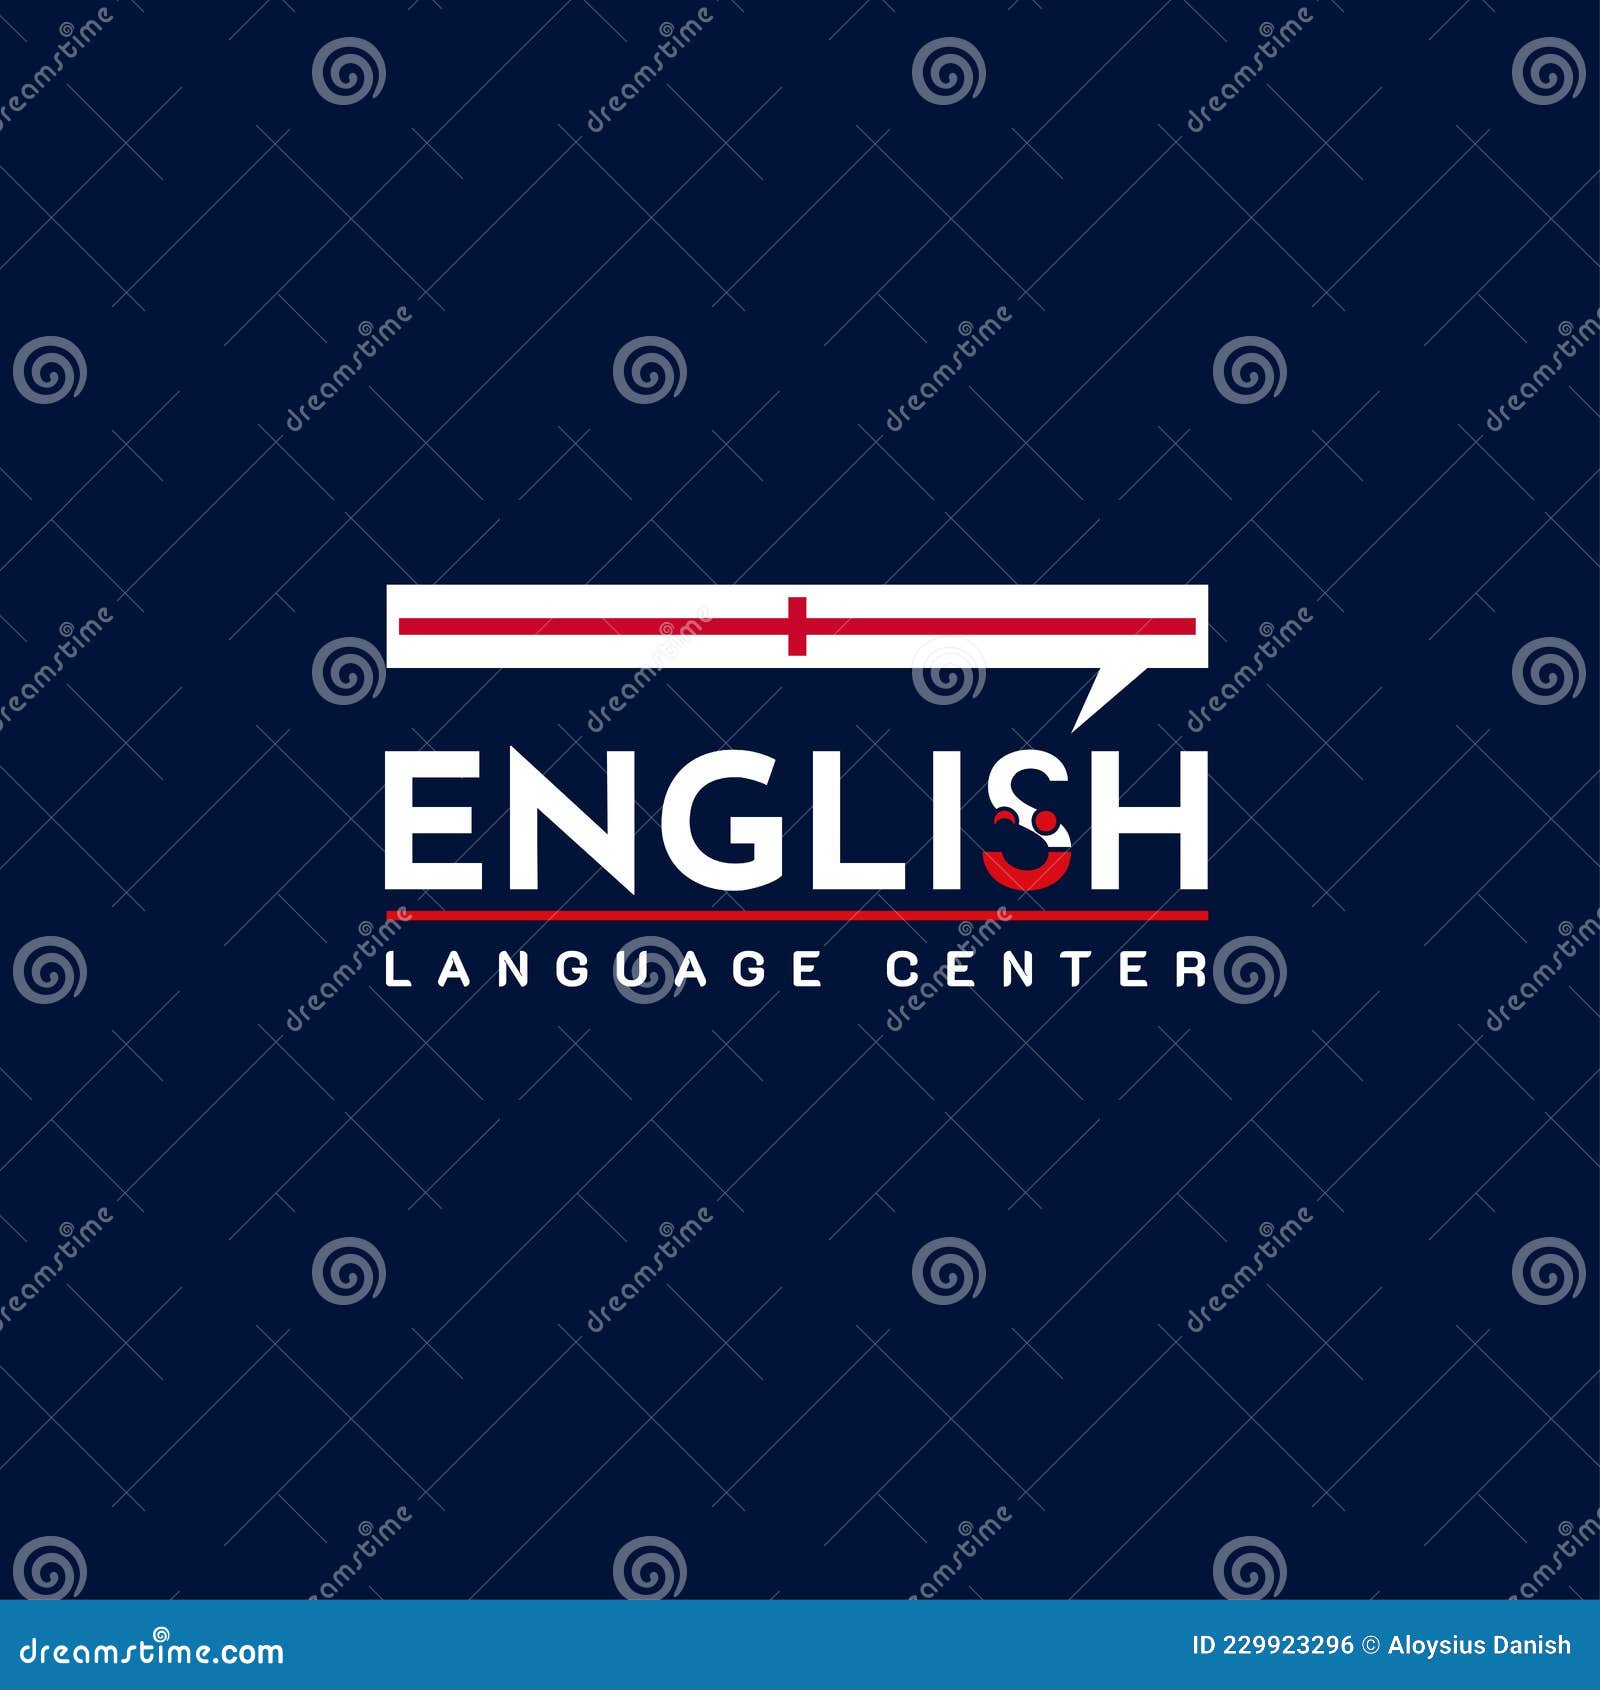 Free Vector | English academy logos set